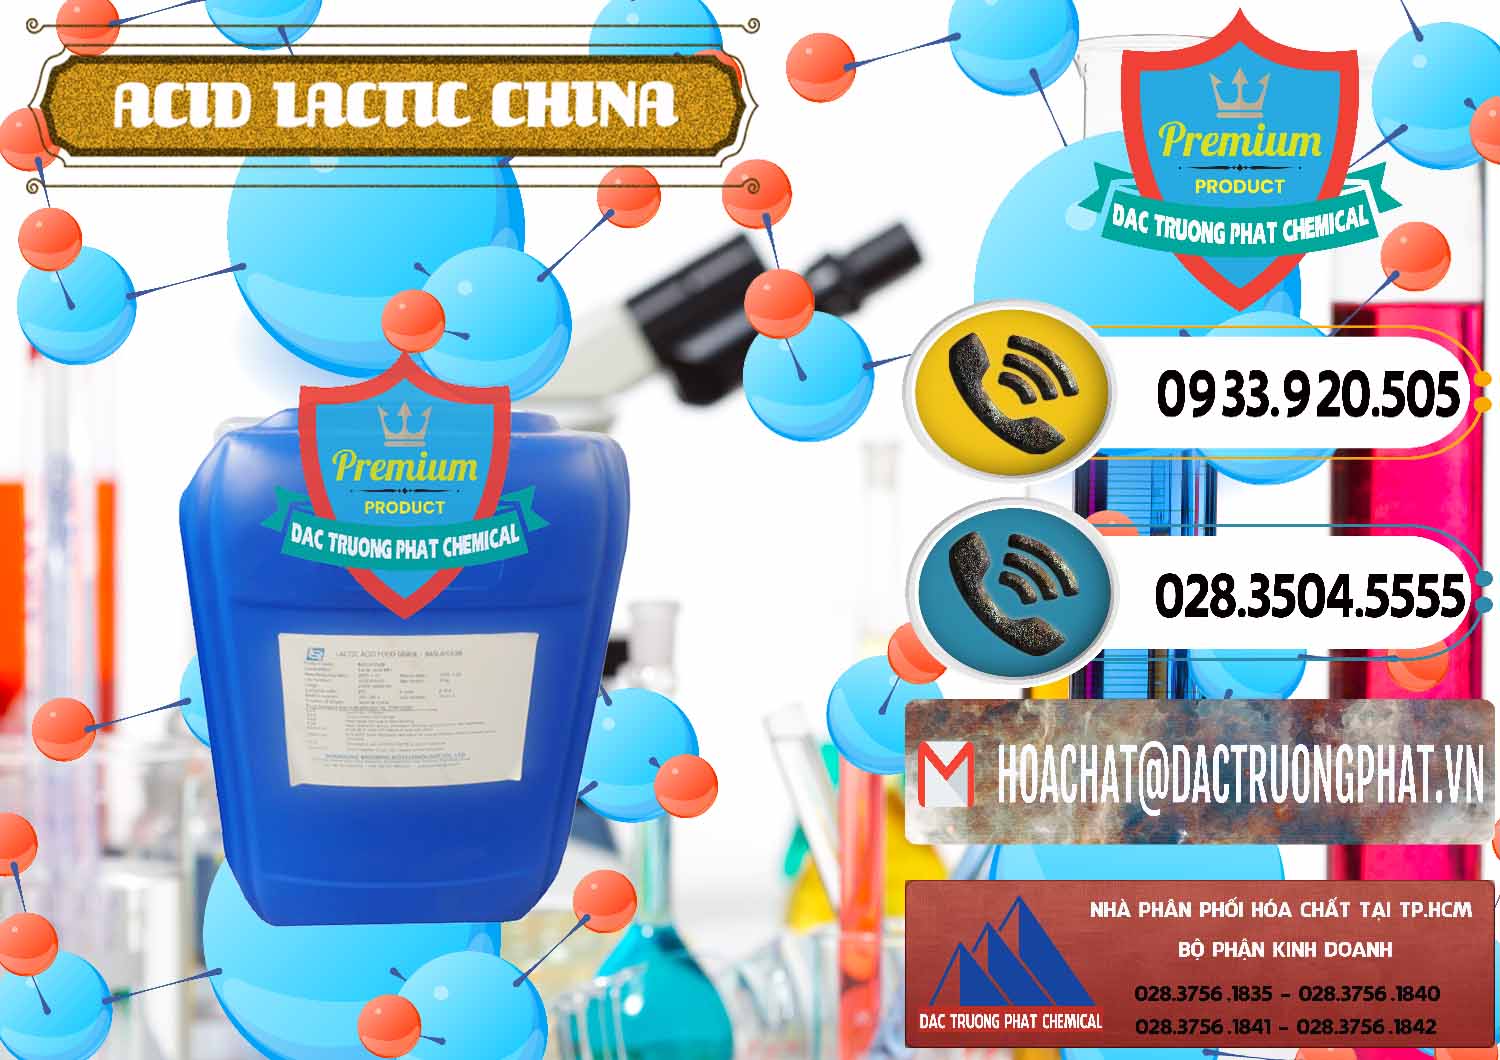 Cty bán _ cung cấp Acid Lactic – Axit Lactic Trung Quốc China - 0374 - Công ty nhập khẩu _ phân phối hóa chất tại TP.HCM - hoachatdetnhuom.vn